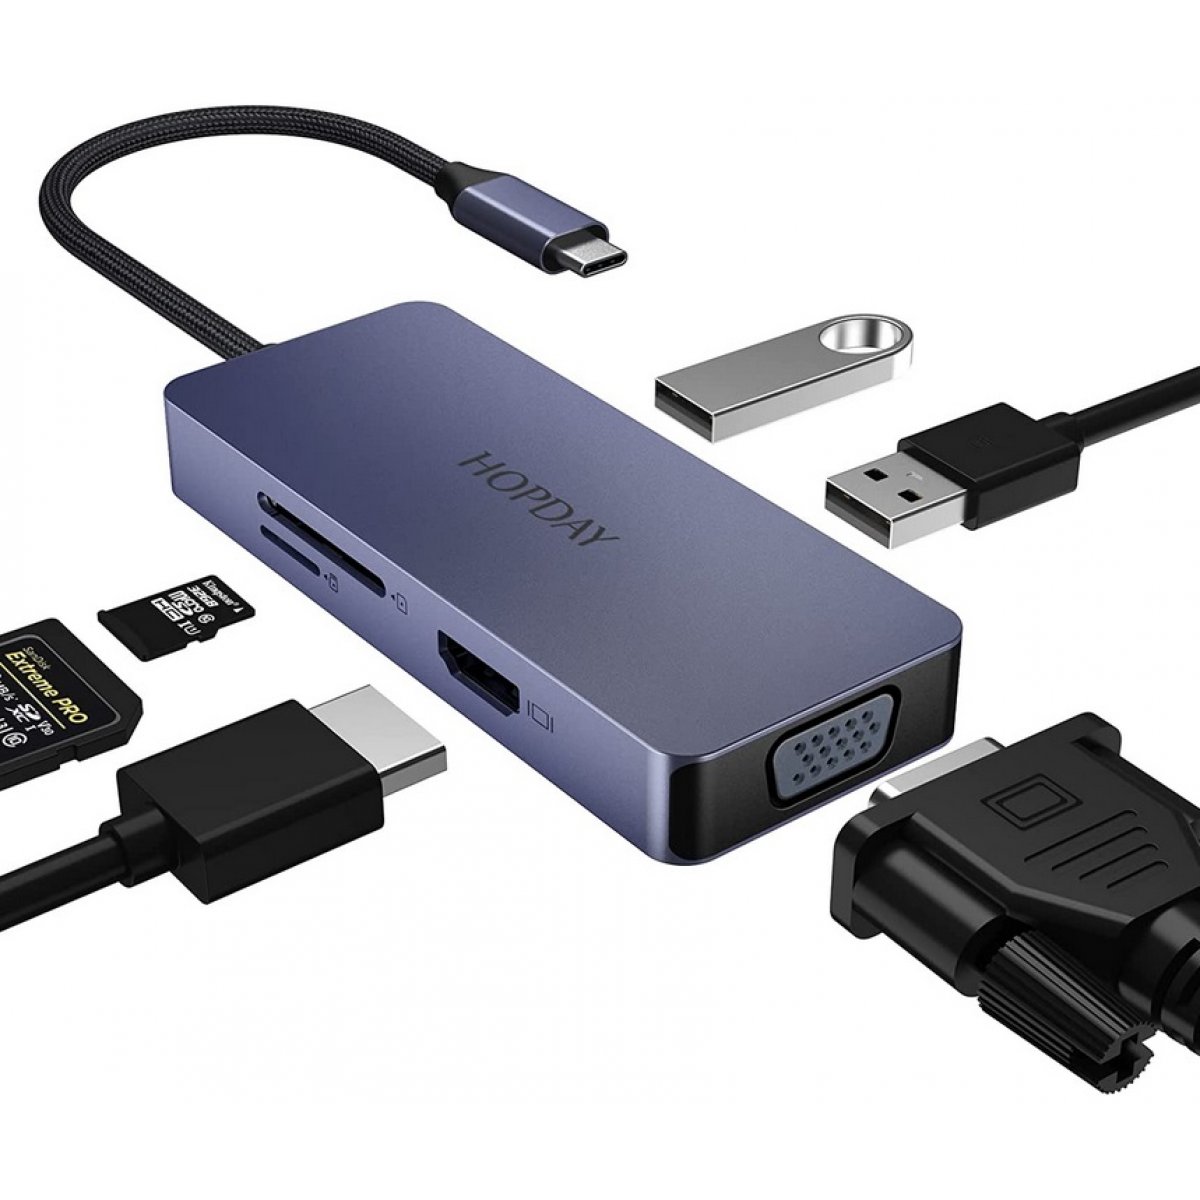 DOCK USB "C" A 2 USB+HDMI+VGA+SD+TF HOPDAY